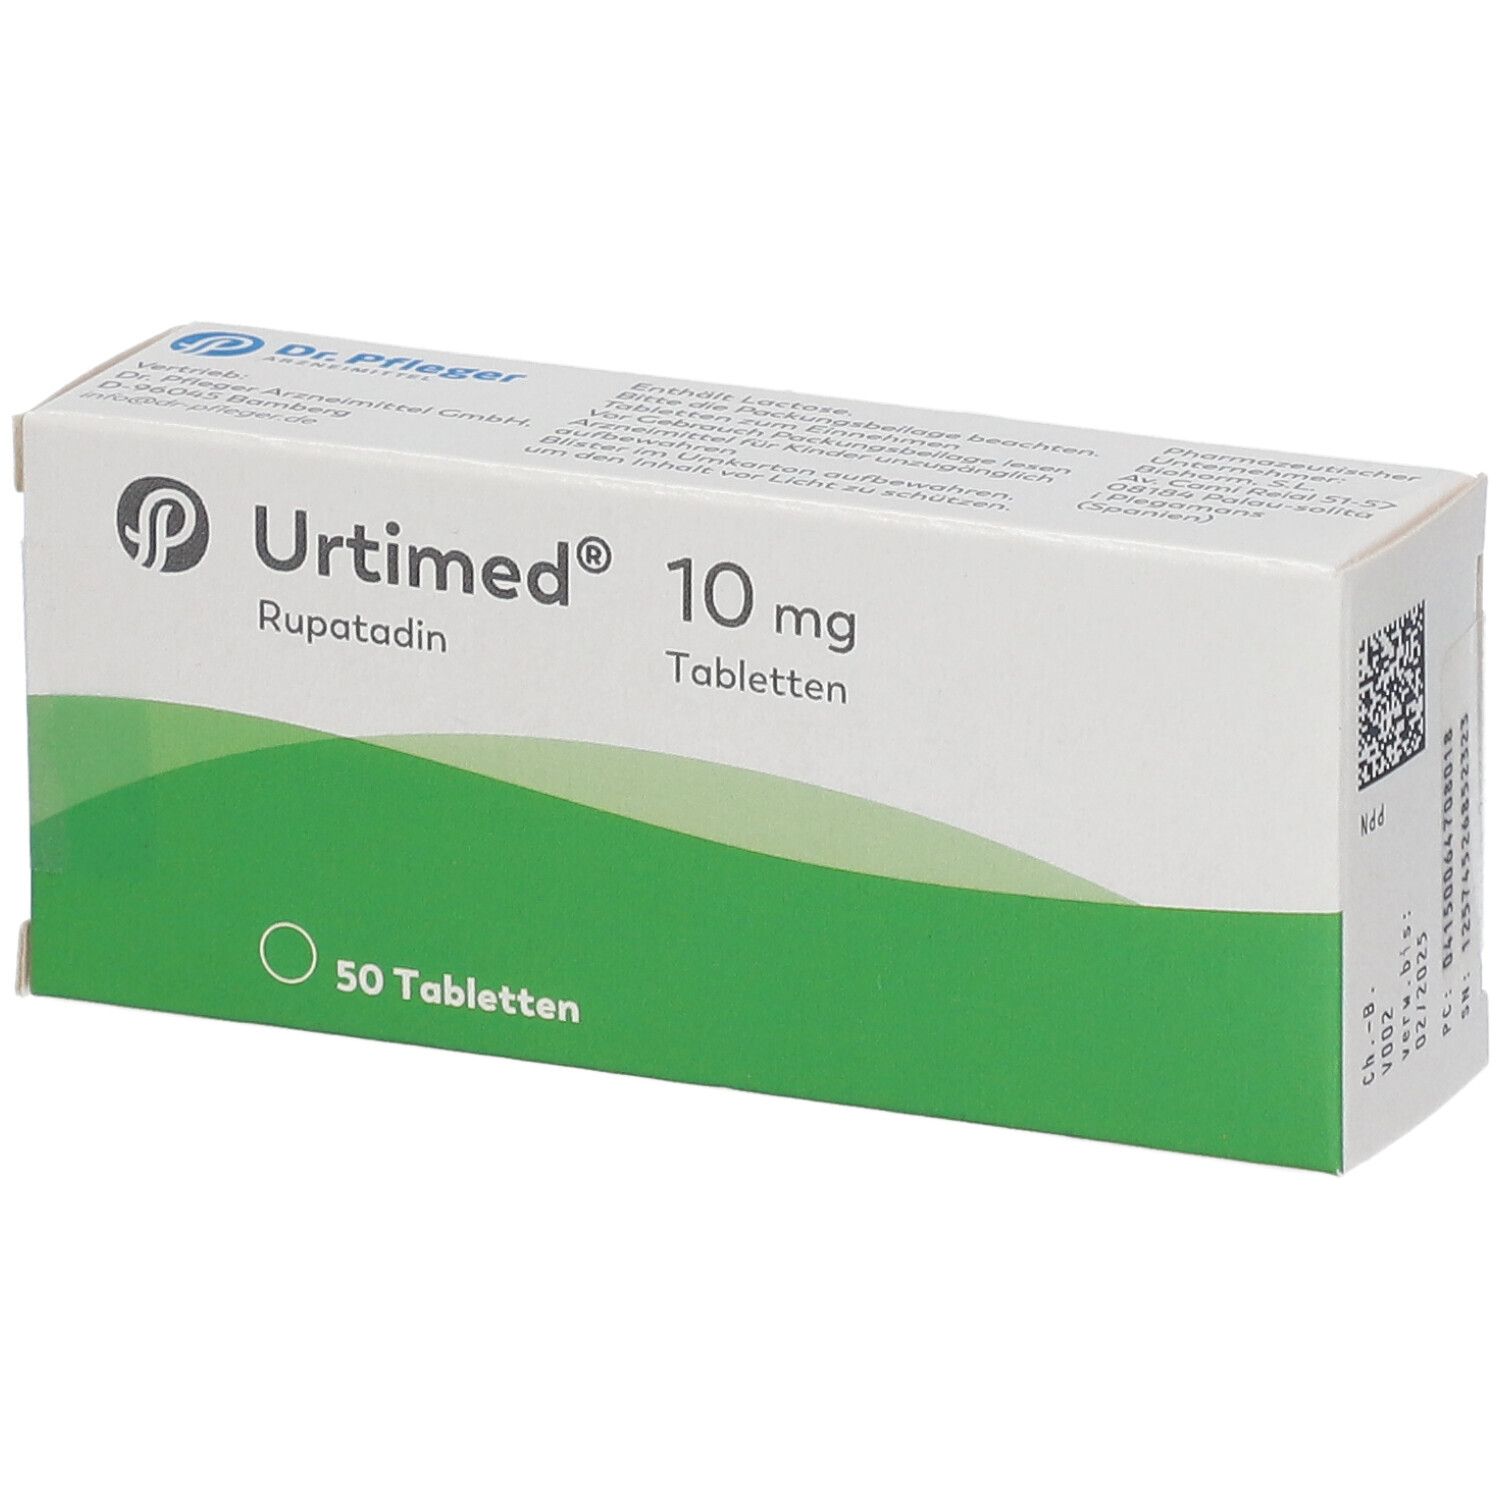 Urtimed® 10 mg